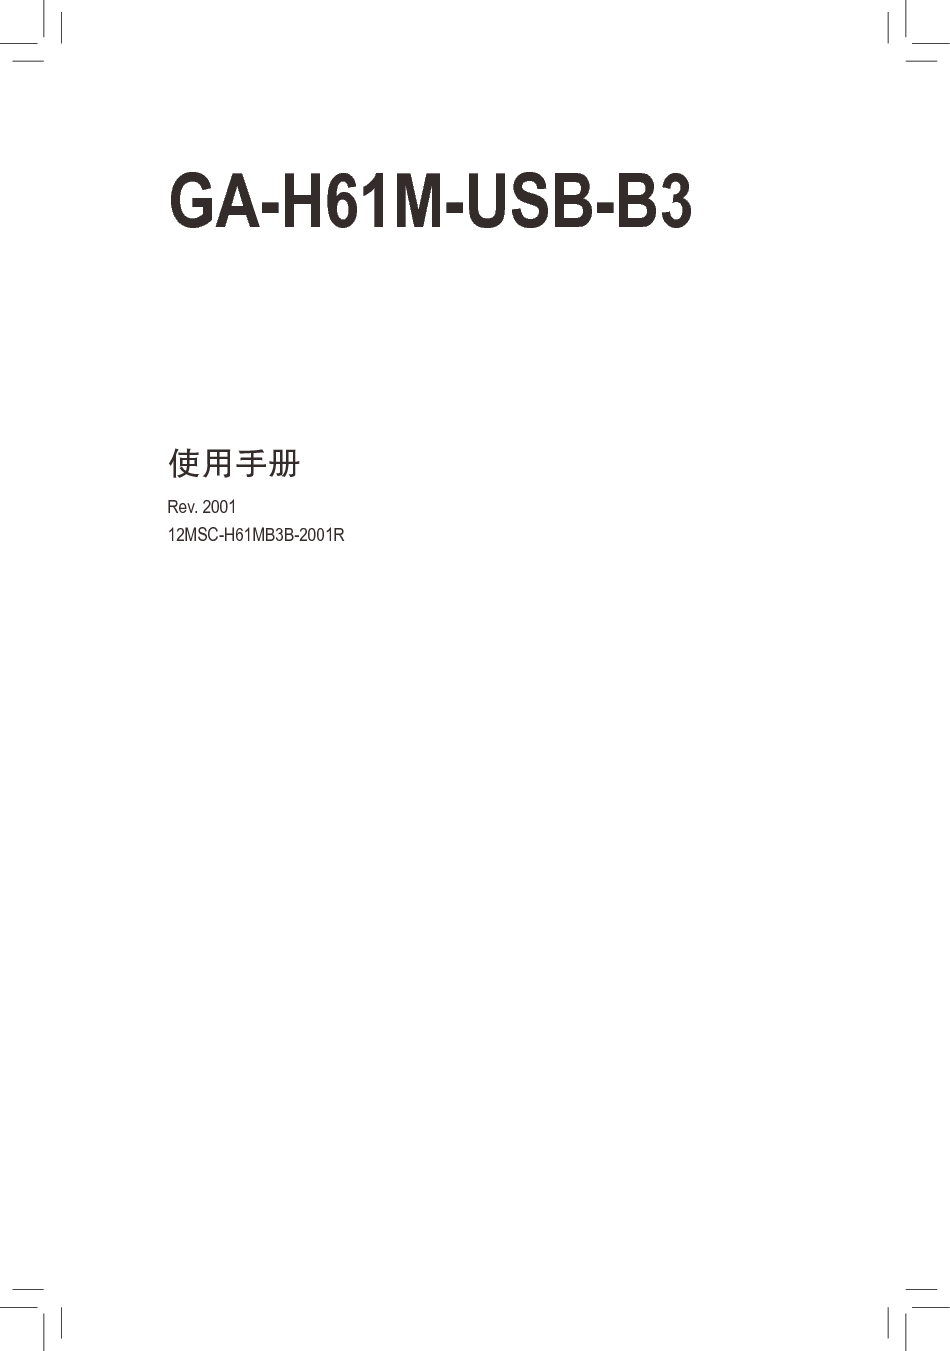 技嘉 Gigabyte GA-H61M-USB3-B3 2001版 使用手册 封面